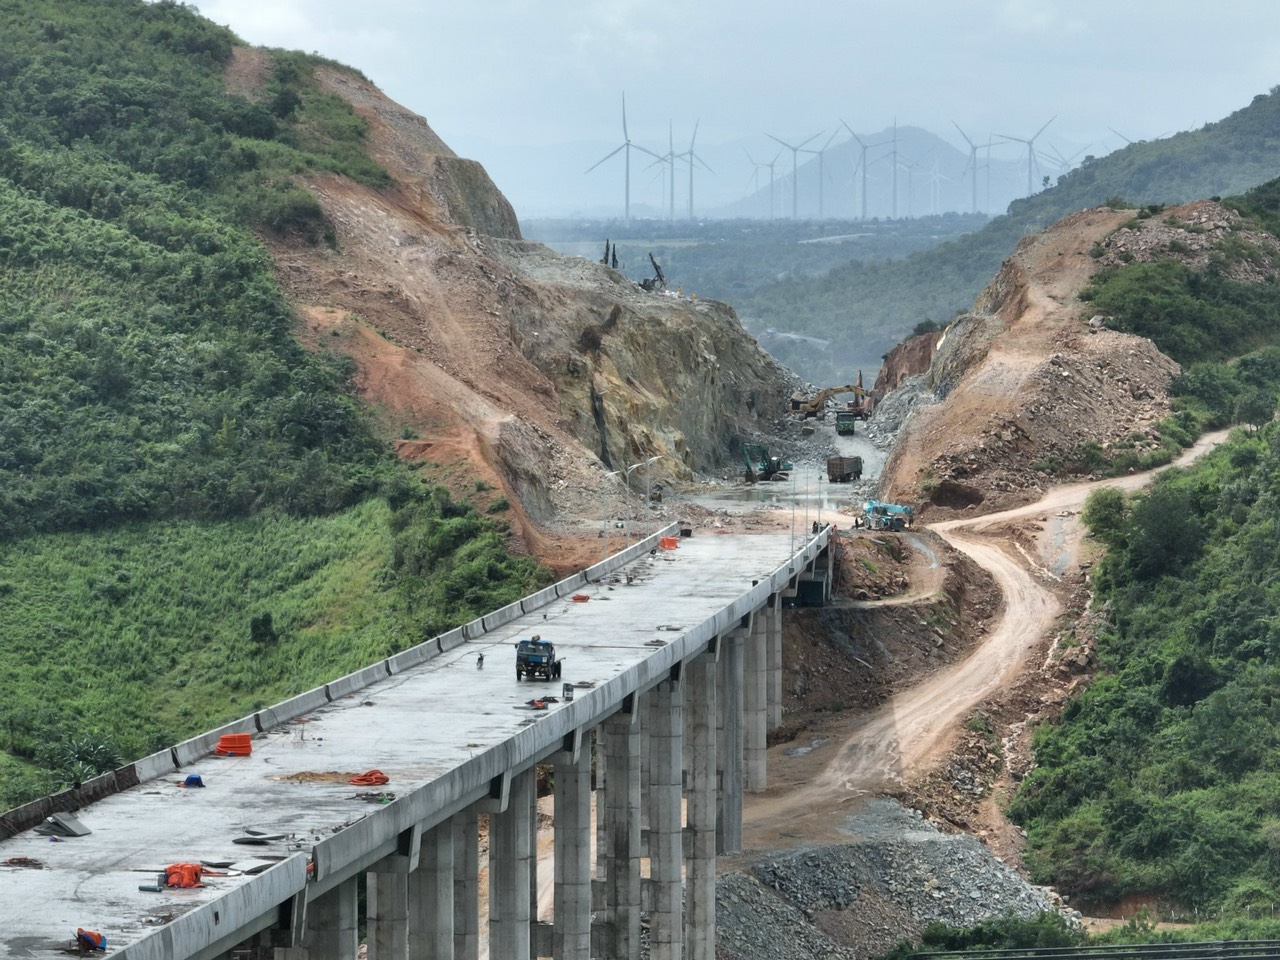 Tuyến cao tốc Cam Lâm - Vĩnh Hảo dài 78km, có 2 cầu cao trên 47m  và hầm núi Vung dài 2,2km, sẽ khánh thành vào tháng 4-2024,  nối thông toàn bộ cao tốc từ Nha Trang đi TP.Hồ Chí Minh. Ảnh: Đặng Đại